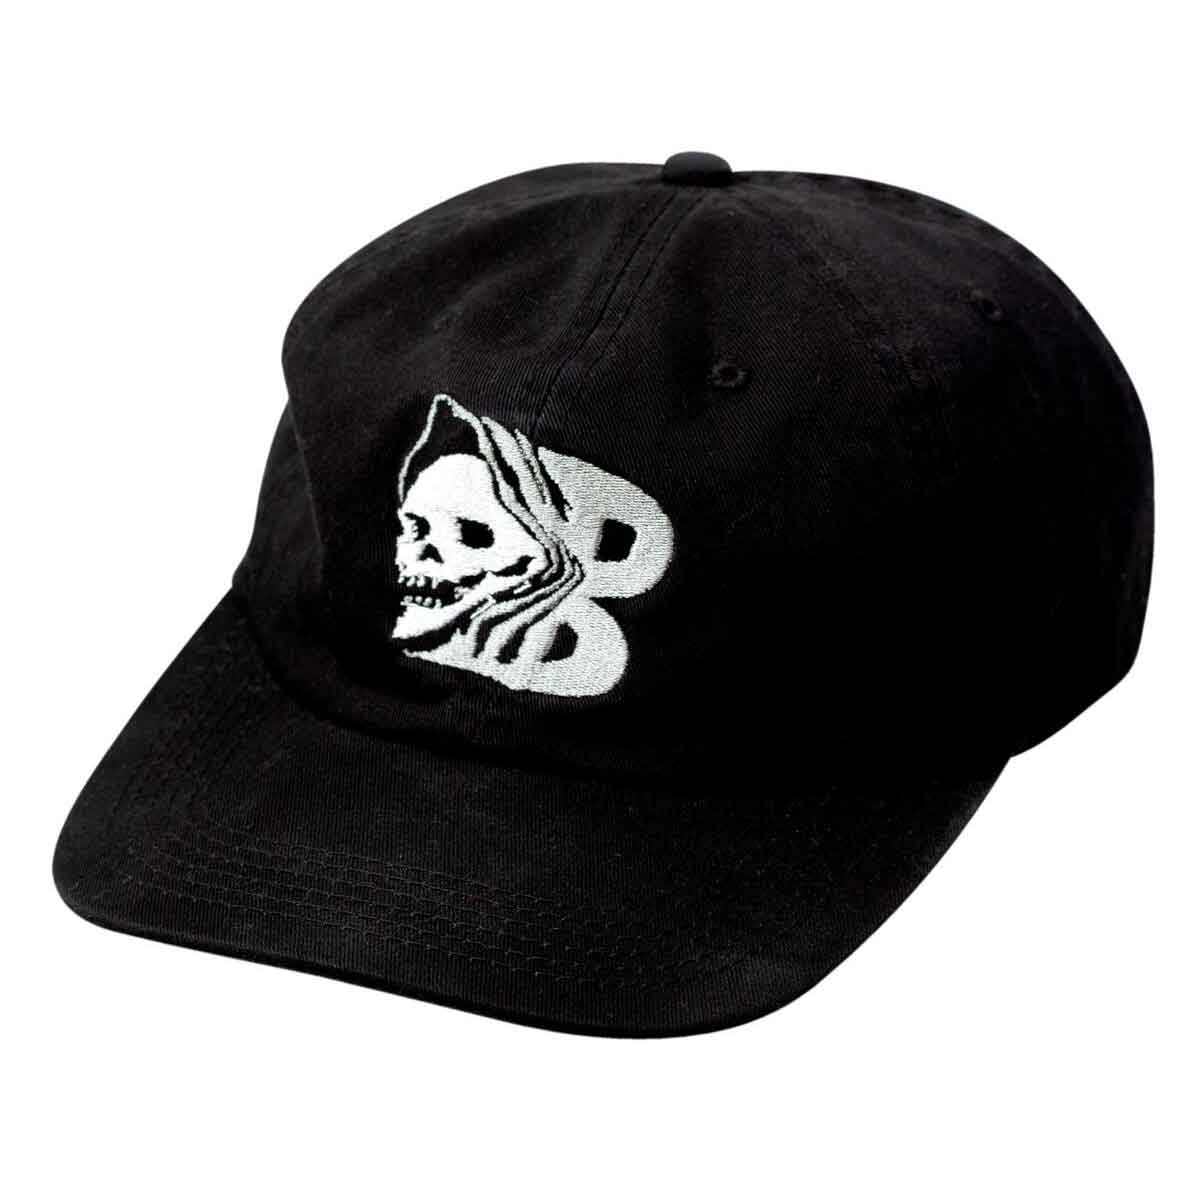 Capital B Skull Baker Skateboards Hat